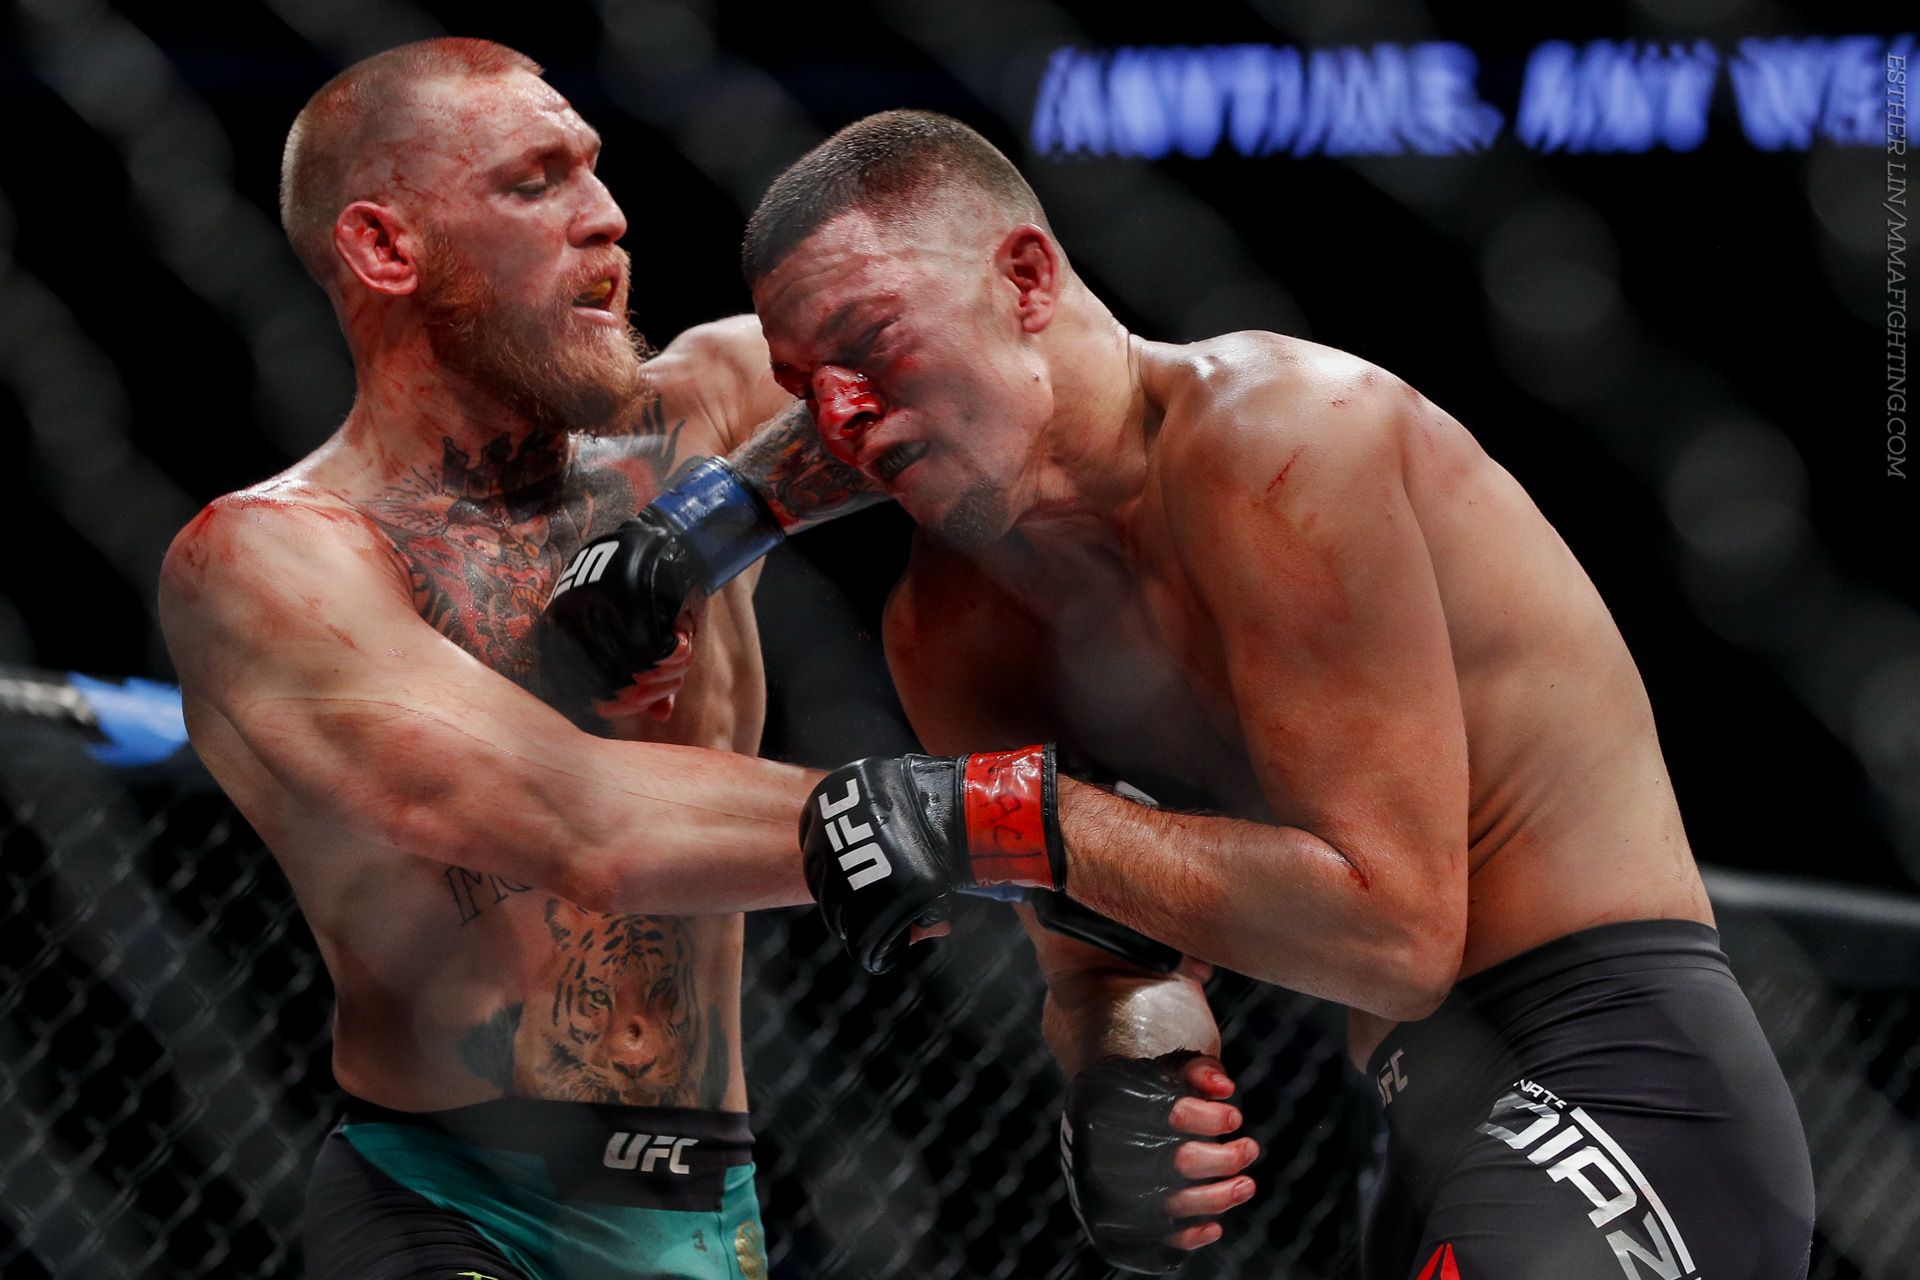 McGregor vs Diaz III